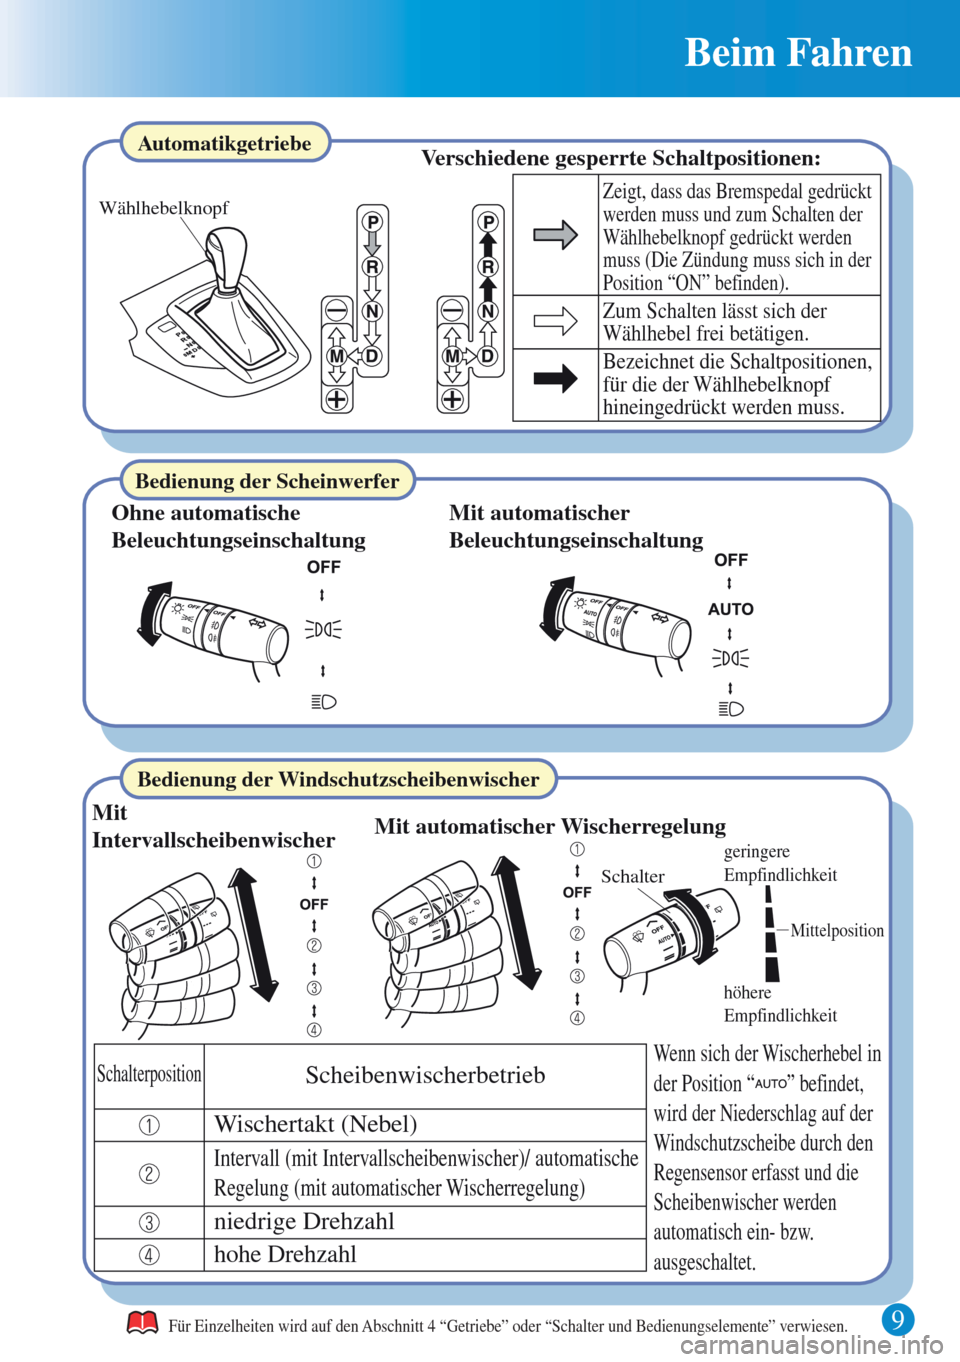 MAZDA MODEL CX-5 2013  Kurzanleitung (in German) 9 
Beim Fahren 
höhere 
Empfindlichkeit
geringere 
Empfindlichkeit
Schalter
Mittelposition
Wählhebelknopf 
Für Einzelheiten wird auf den Abschnitt 4 “Getriebe” oder “Schalter und Bedienungsel